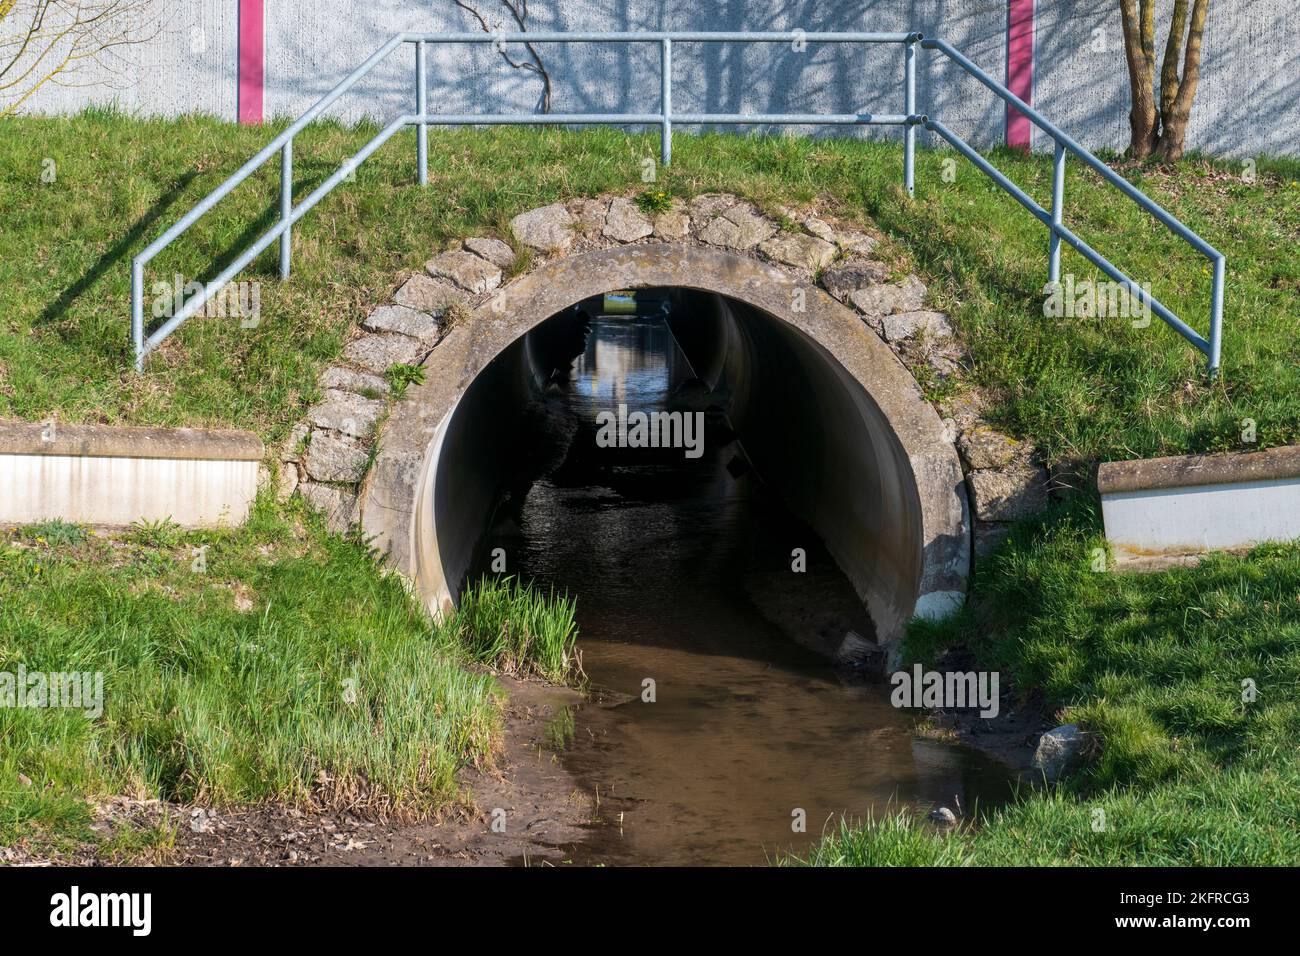 Abwasserkanal, Tunnel mit Spiegelung und Licht am Ende Foto de stock